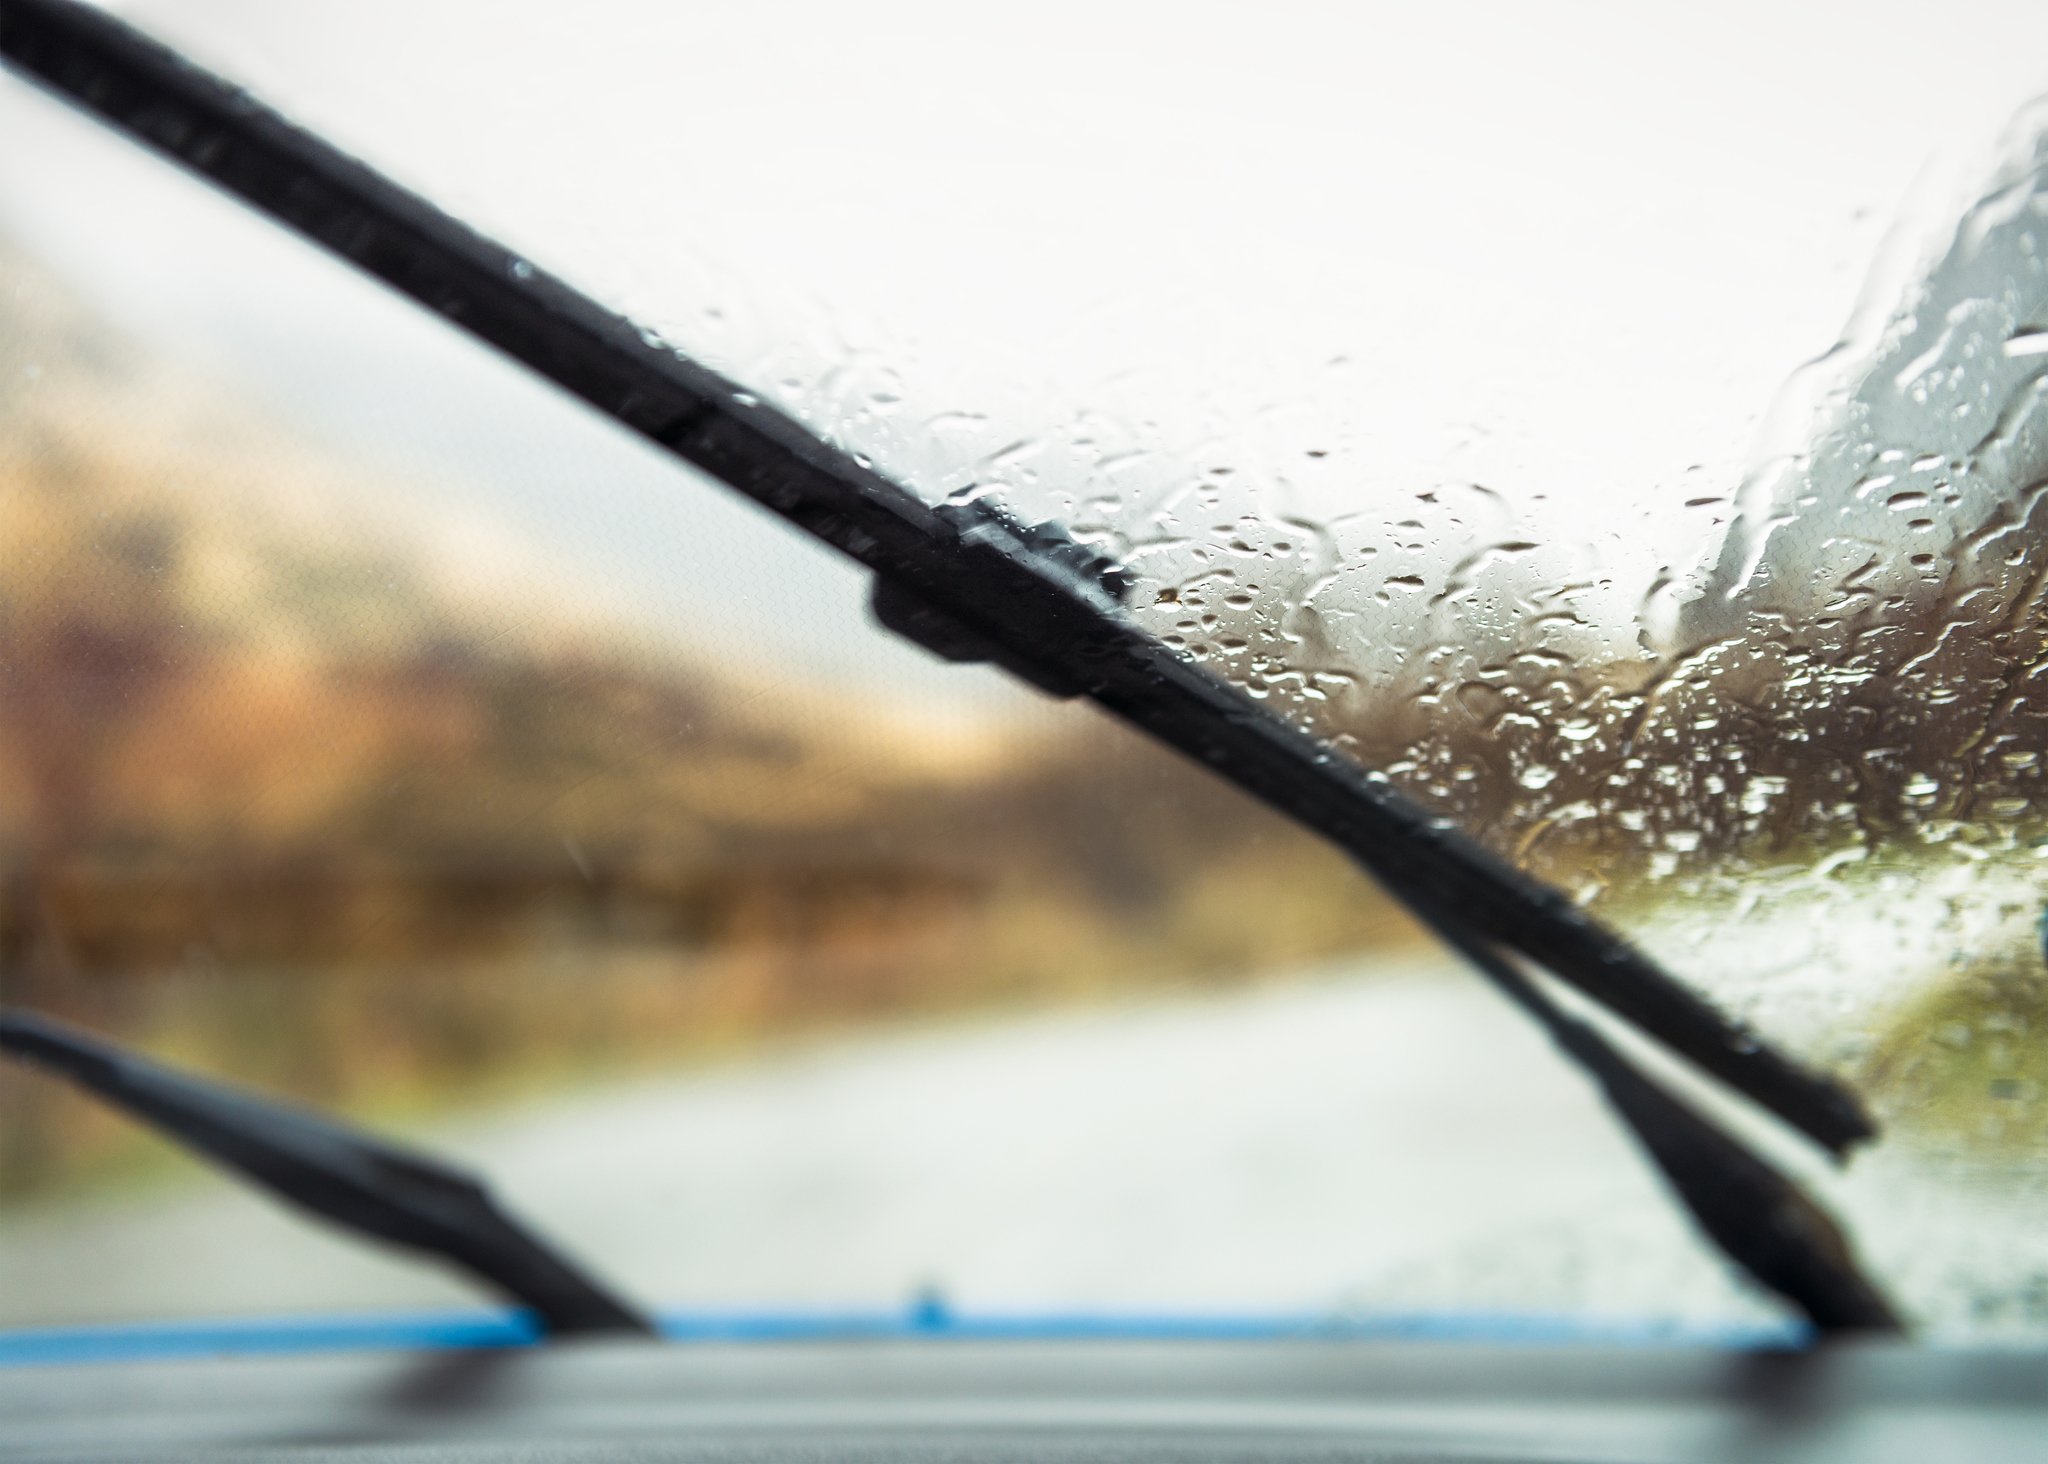 best windshield wiper fluid